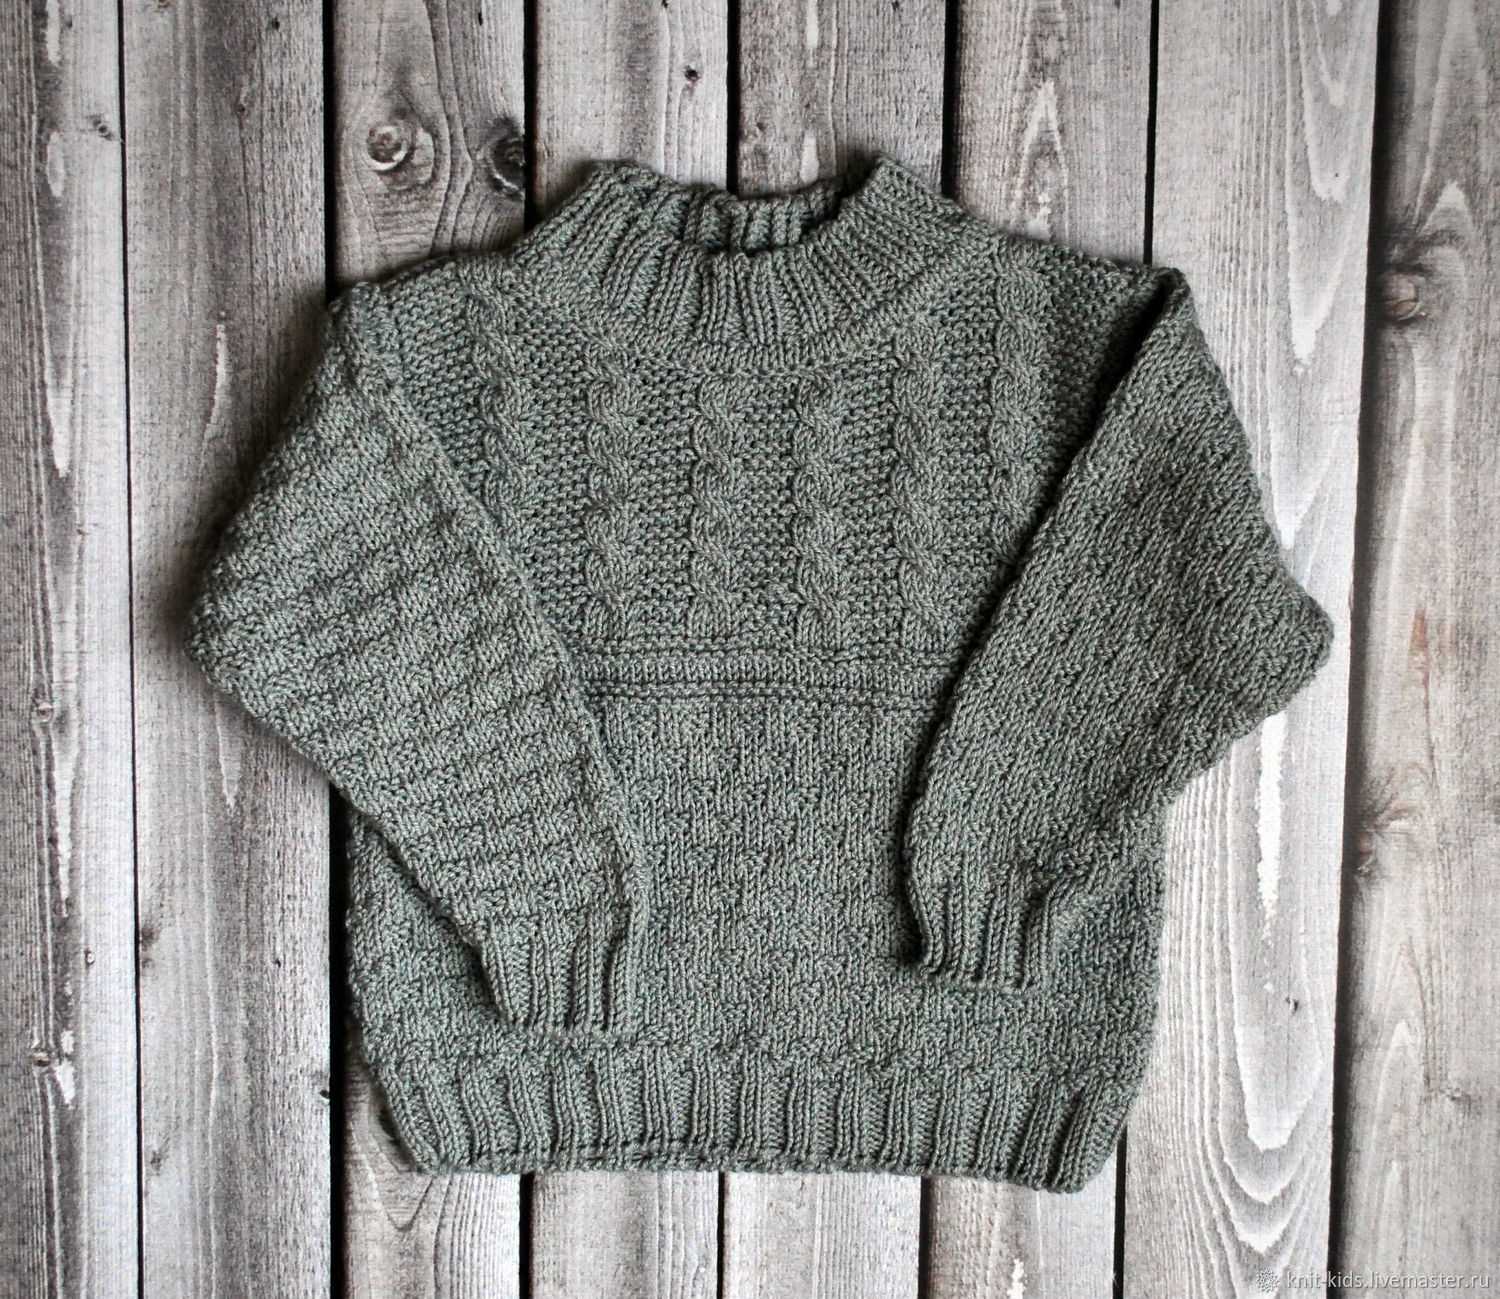 Связать красивый и теплый свитер для мальчика - задача выполнимая, в том числе и для начинающих Рассмотрим несколько доступных схем вязания свитеров